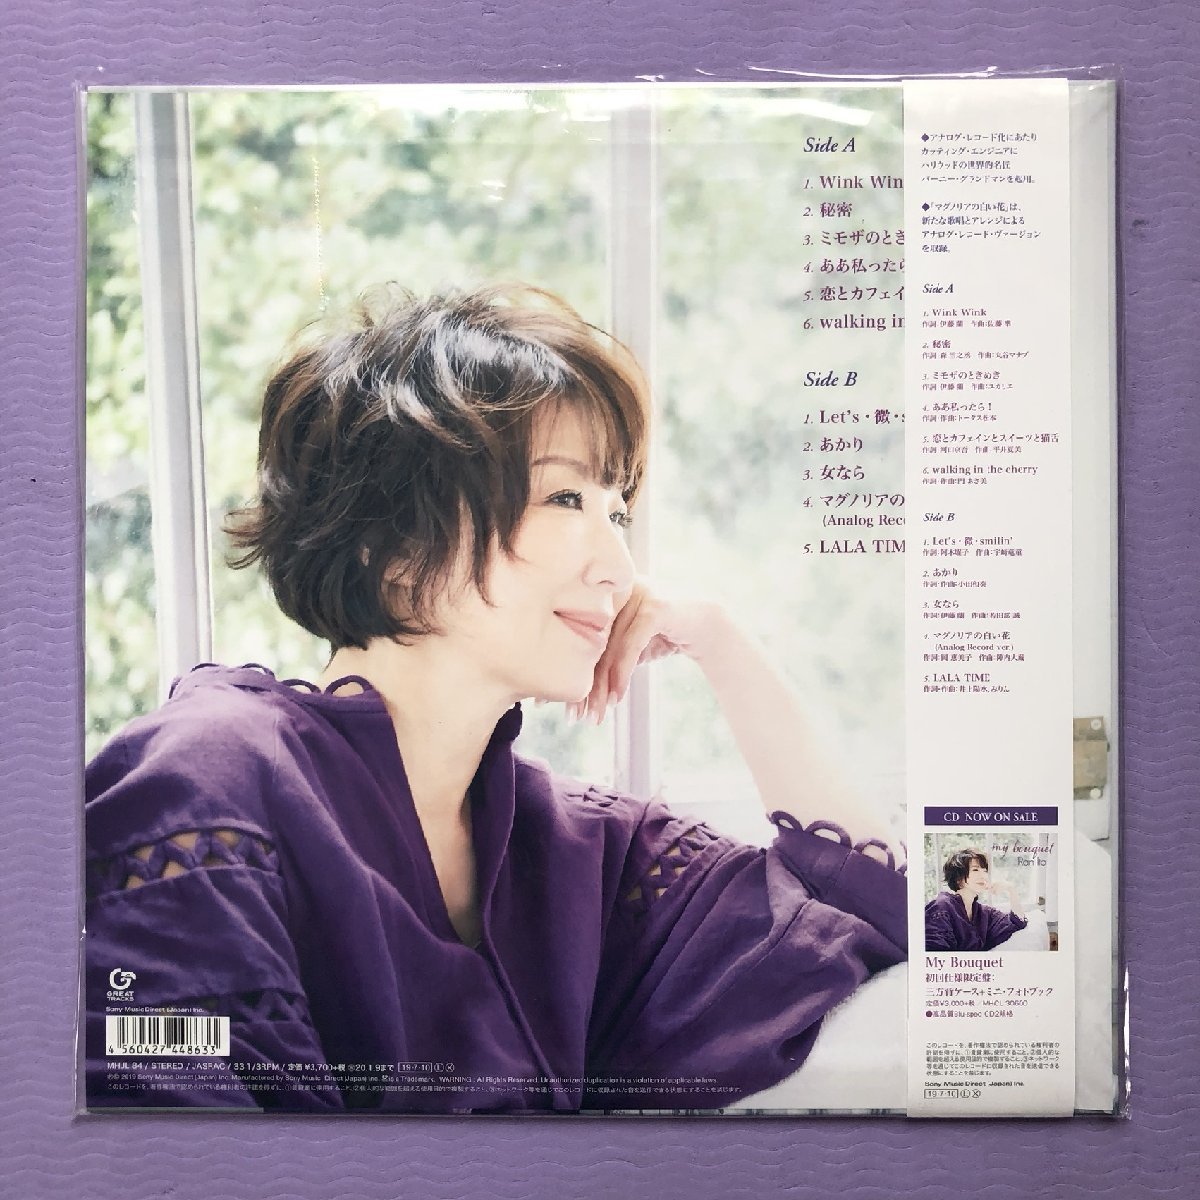  не использовался новый товар 2019 год записано в Японии оригинал Release запись . глициния орхидея Ran Ito LP запись мой * букет My Bouquet с лентой J-Pop Candies 